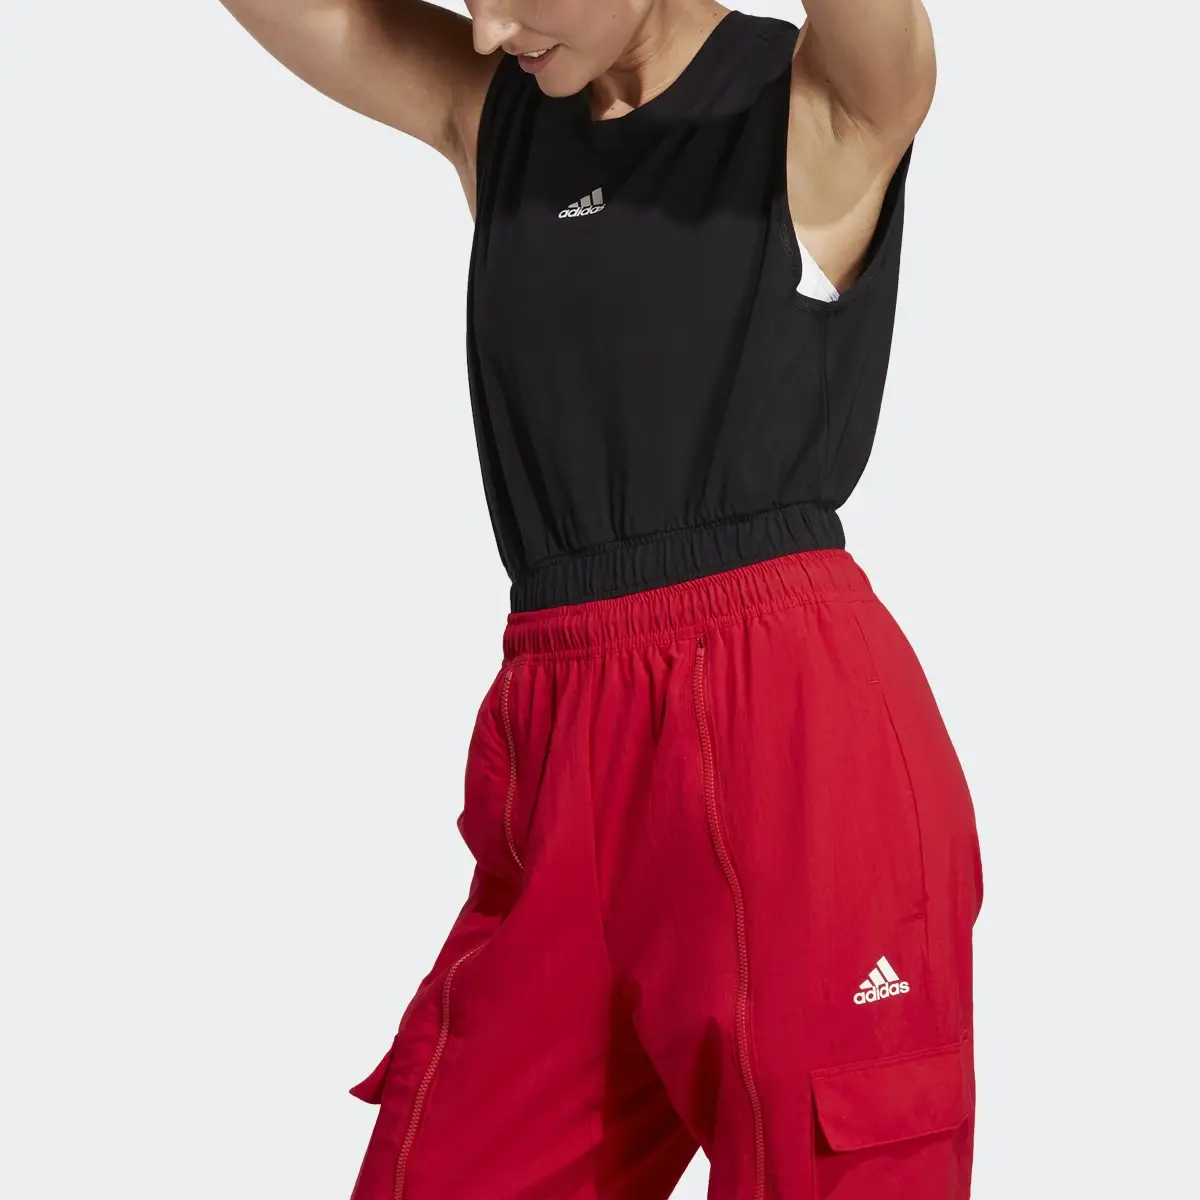 Adidas Dance Bodysuit. 1